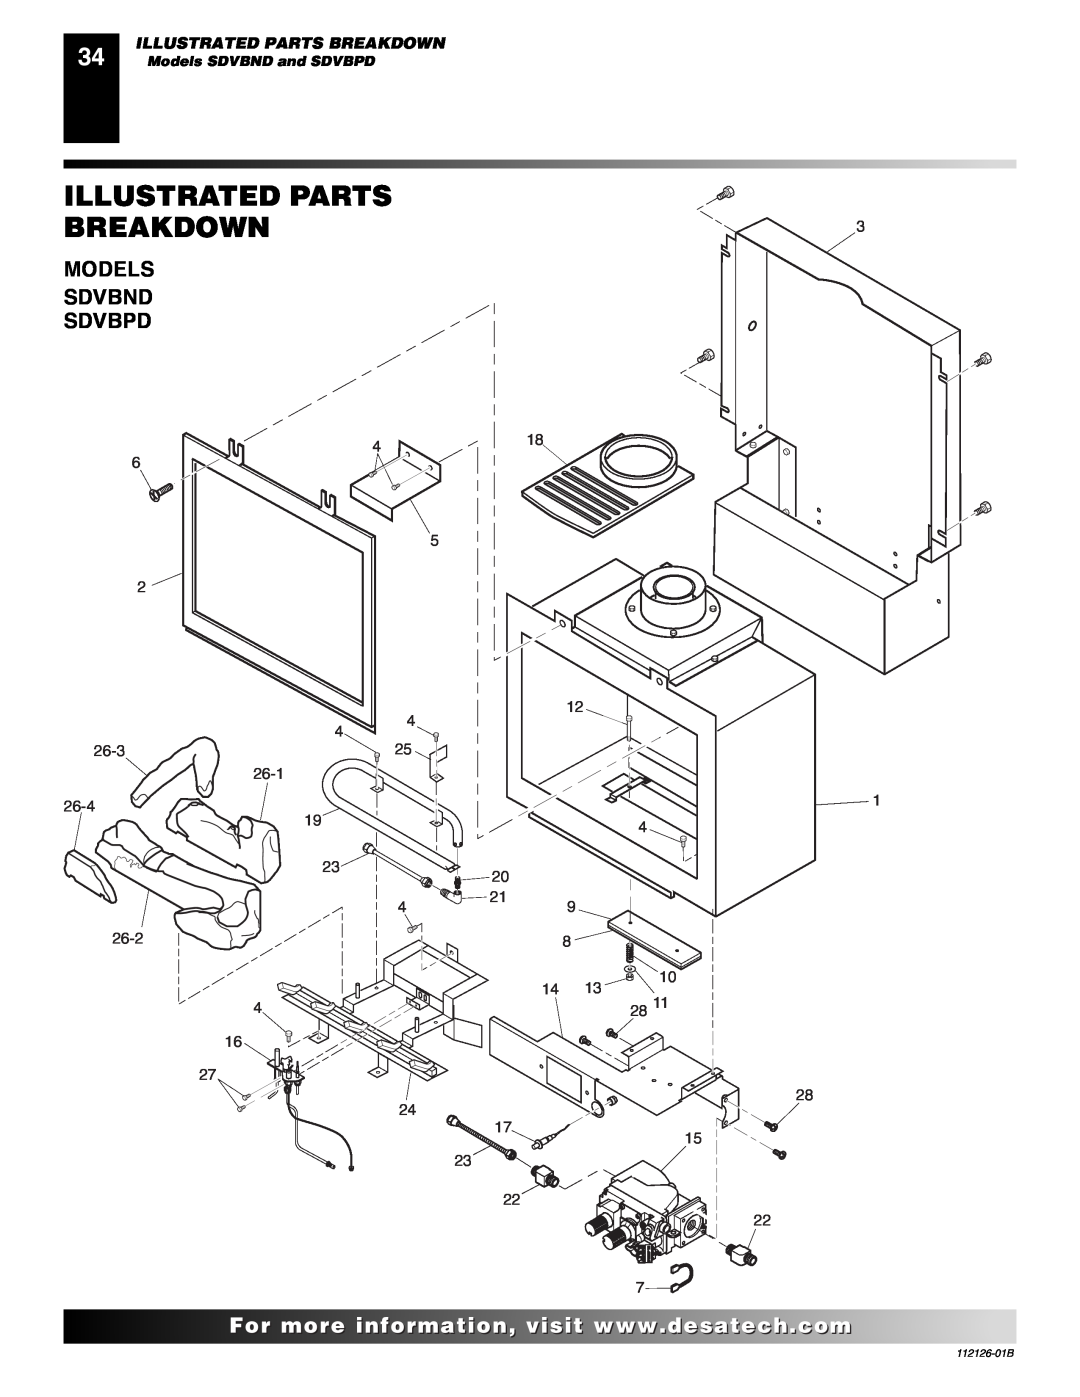 Desa SDVBND, SDVBPD installation manual Illustrated Parts Breakdown, Models Sdvbnd Sdvbpd 